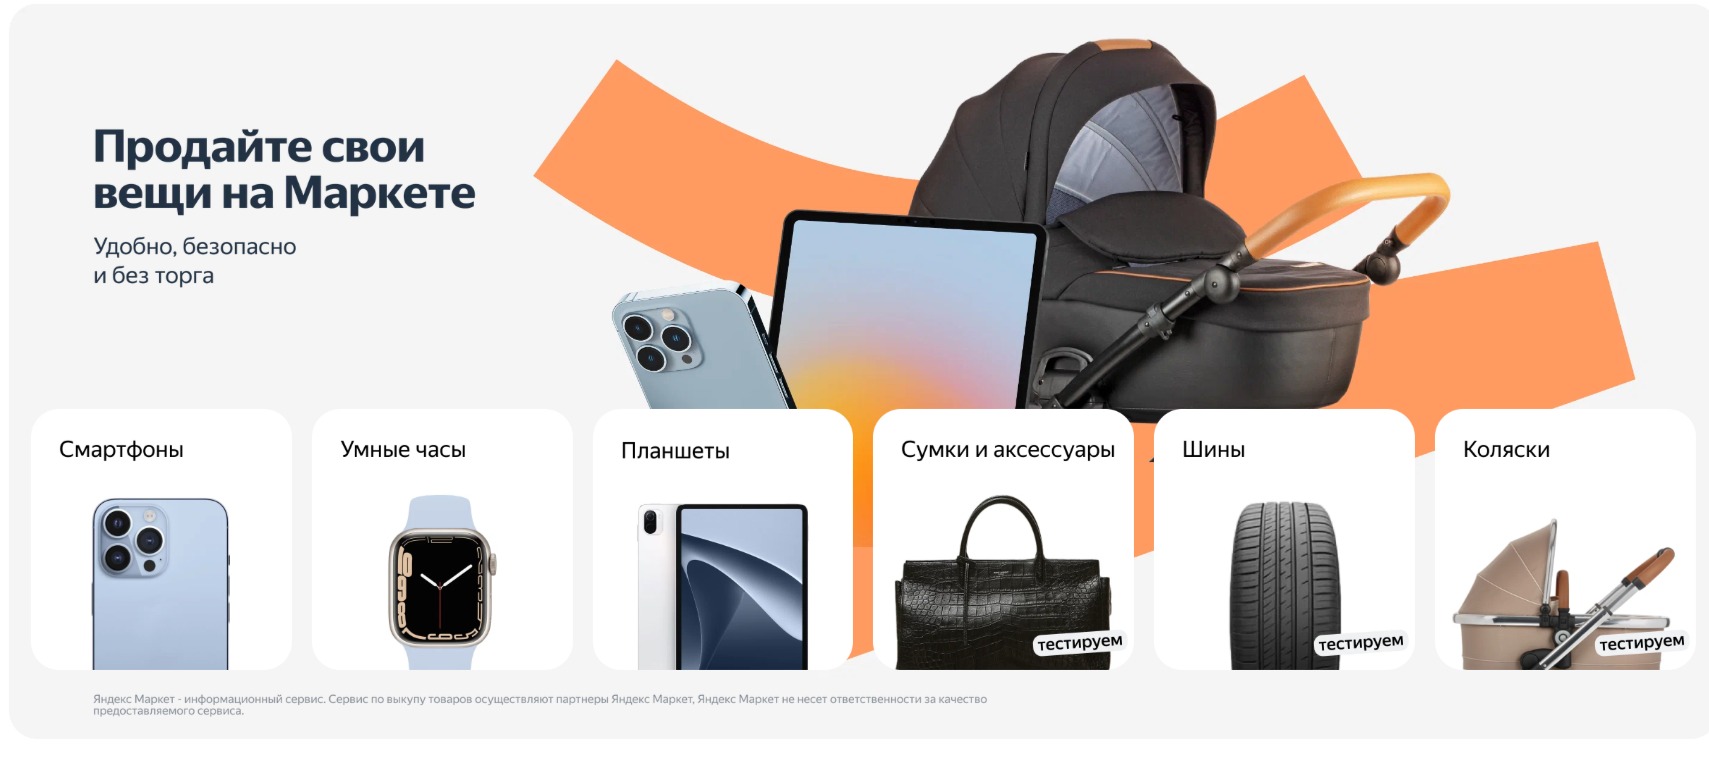 Фото новости: "«Яндекс.Маркет» запустил сервис выкупа подержанных товаров"